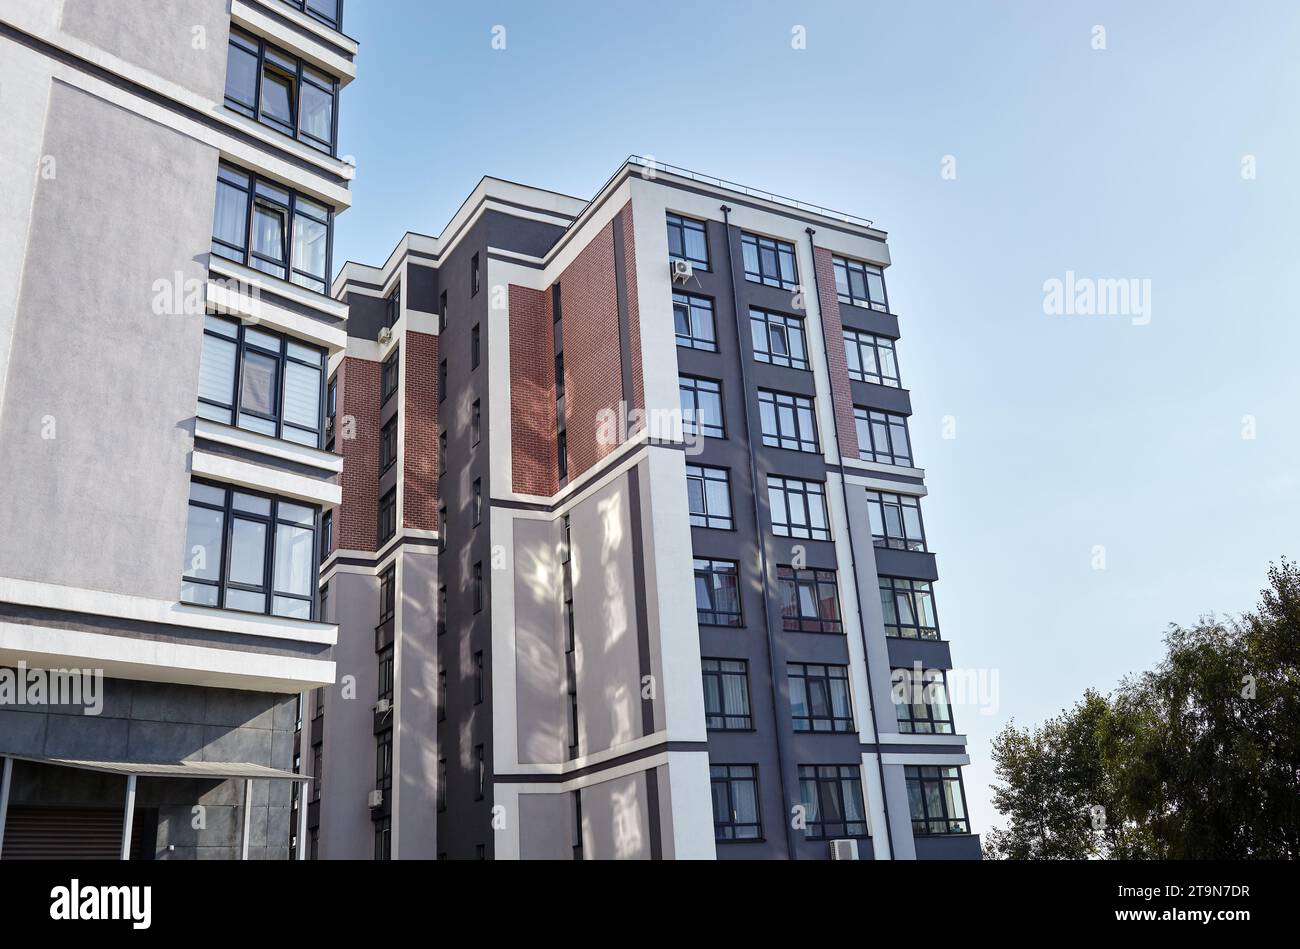 Les immeubles résidentiels européens modernes quartier lors d'une journée ensoleillée avec un ciel bleu. Architecture abstraite, fragment de géométrie urbaine moderne Banque D'Images